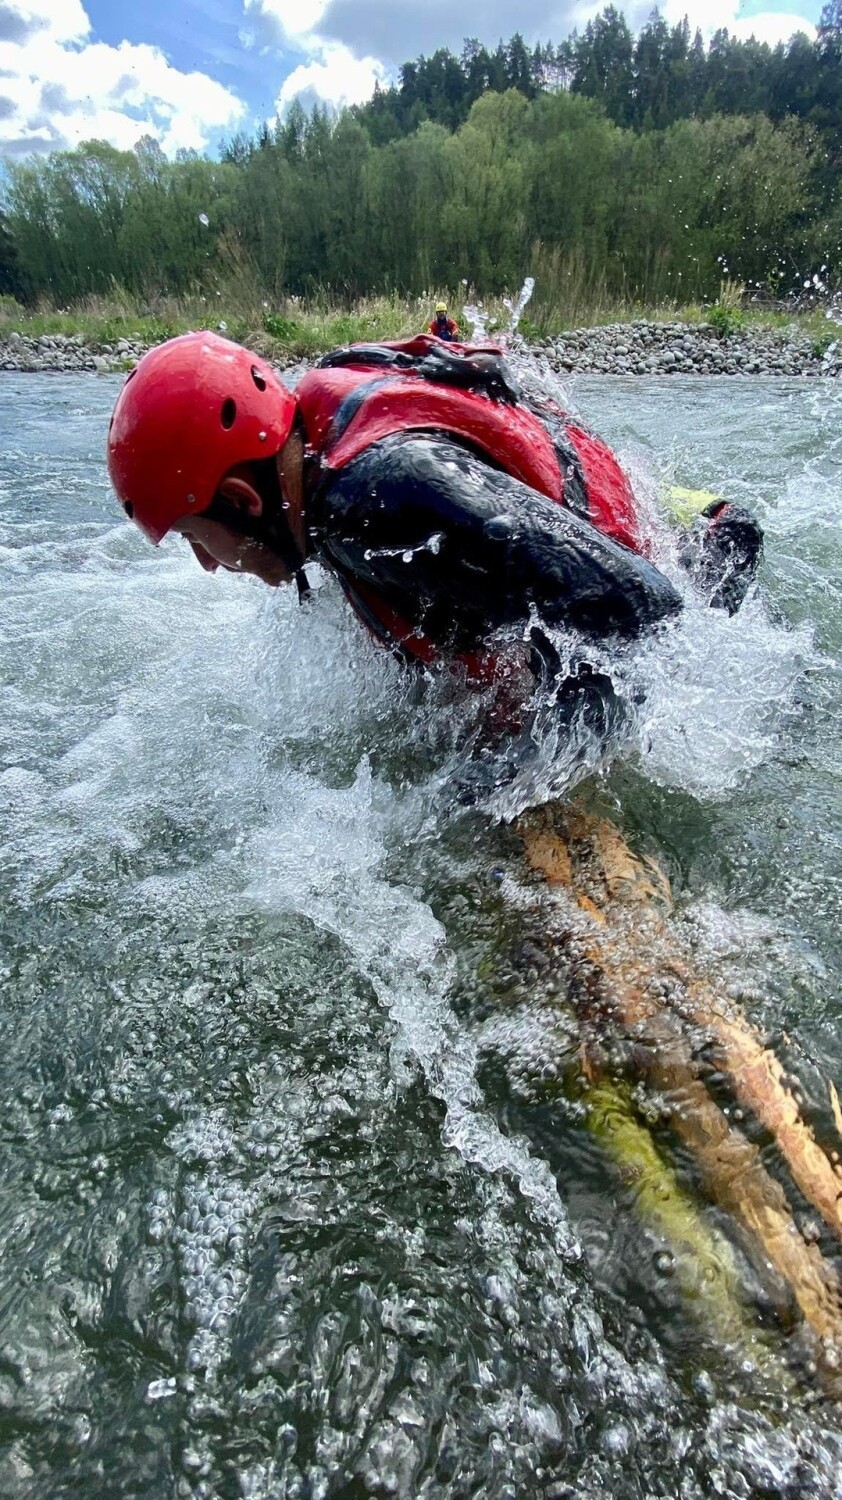 Pieniny. Ratownicy GOPR trenowali jak ratować w rwących rzekach górskich